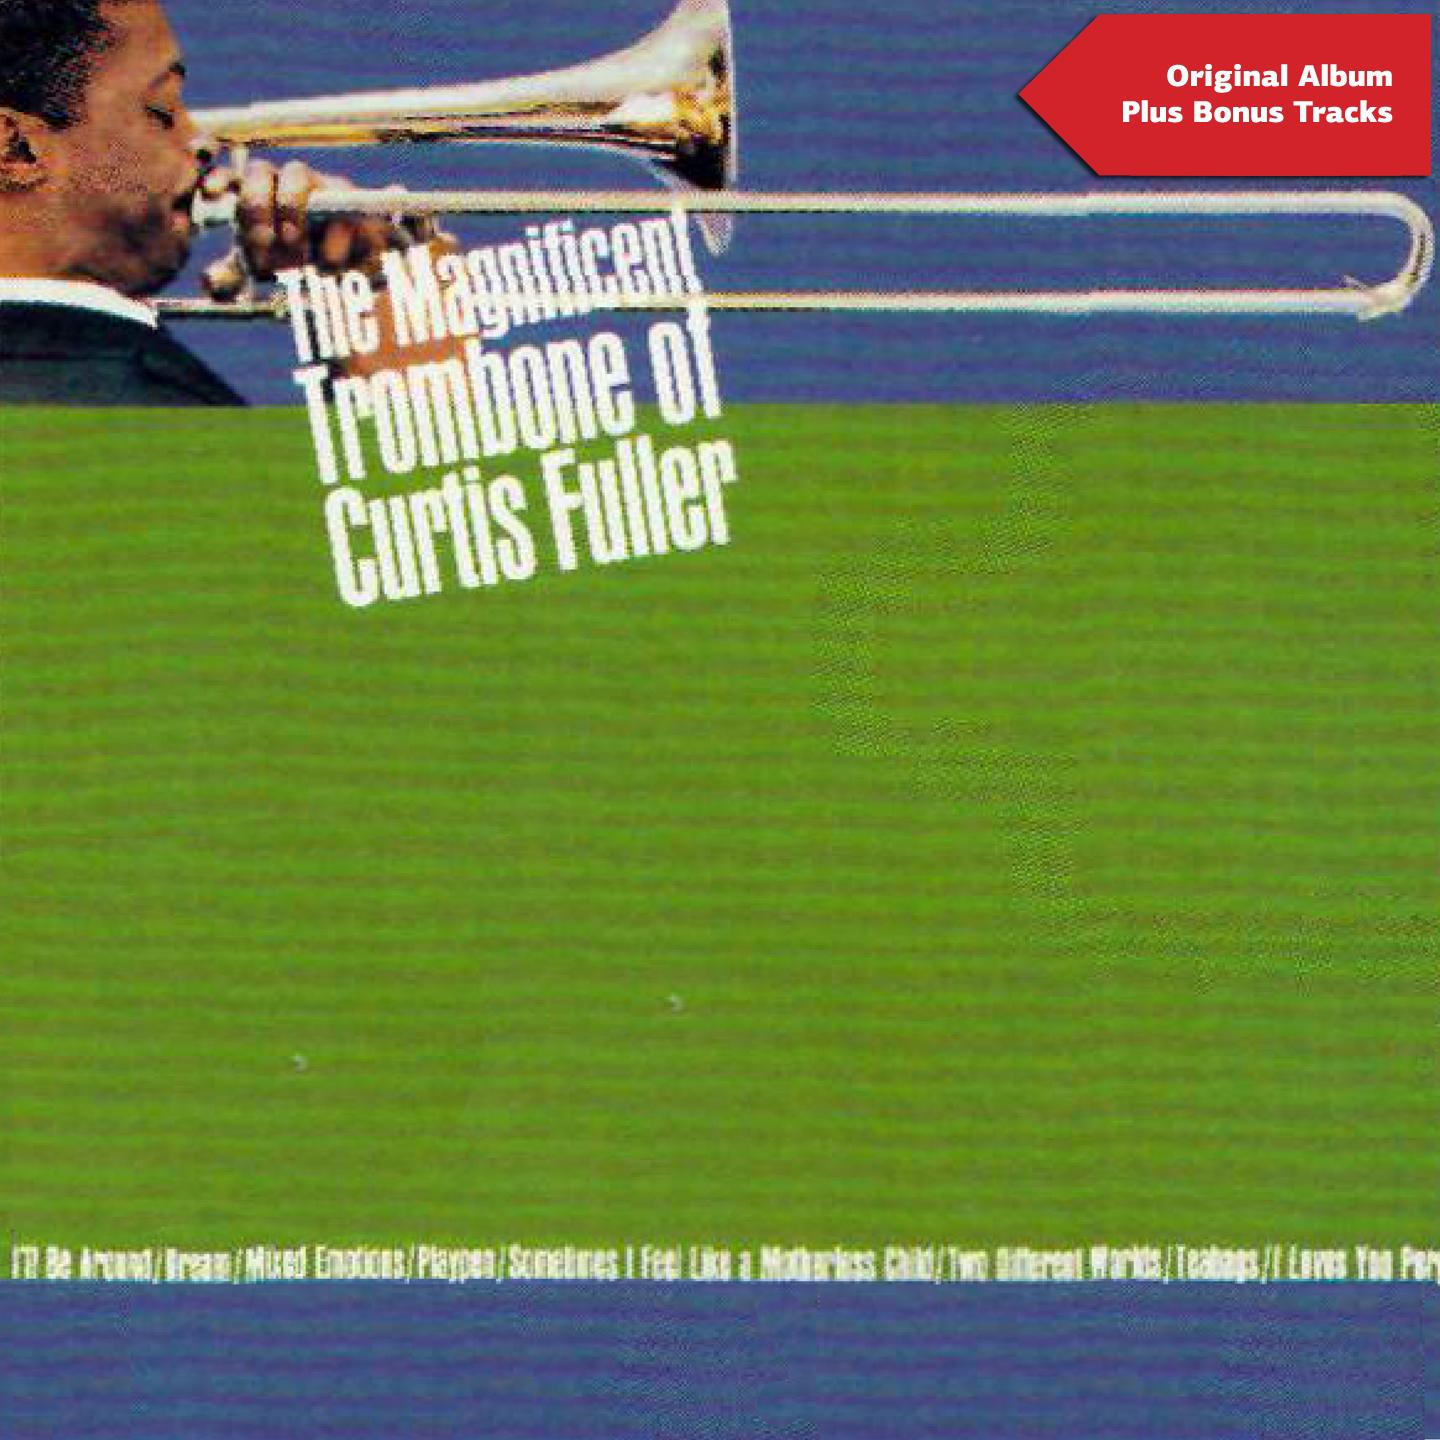 The Magnificent Trombone of Curtis Fuller (Original Album Plus Bonus Tracks)